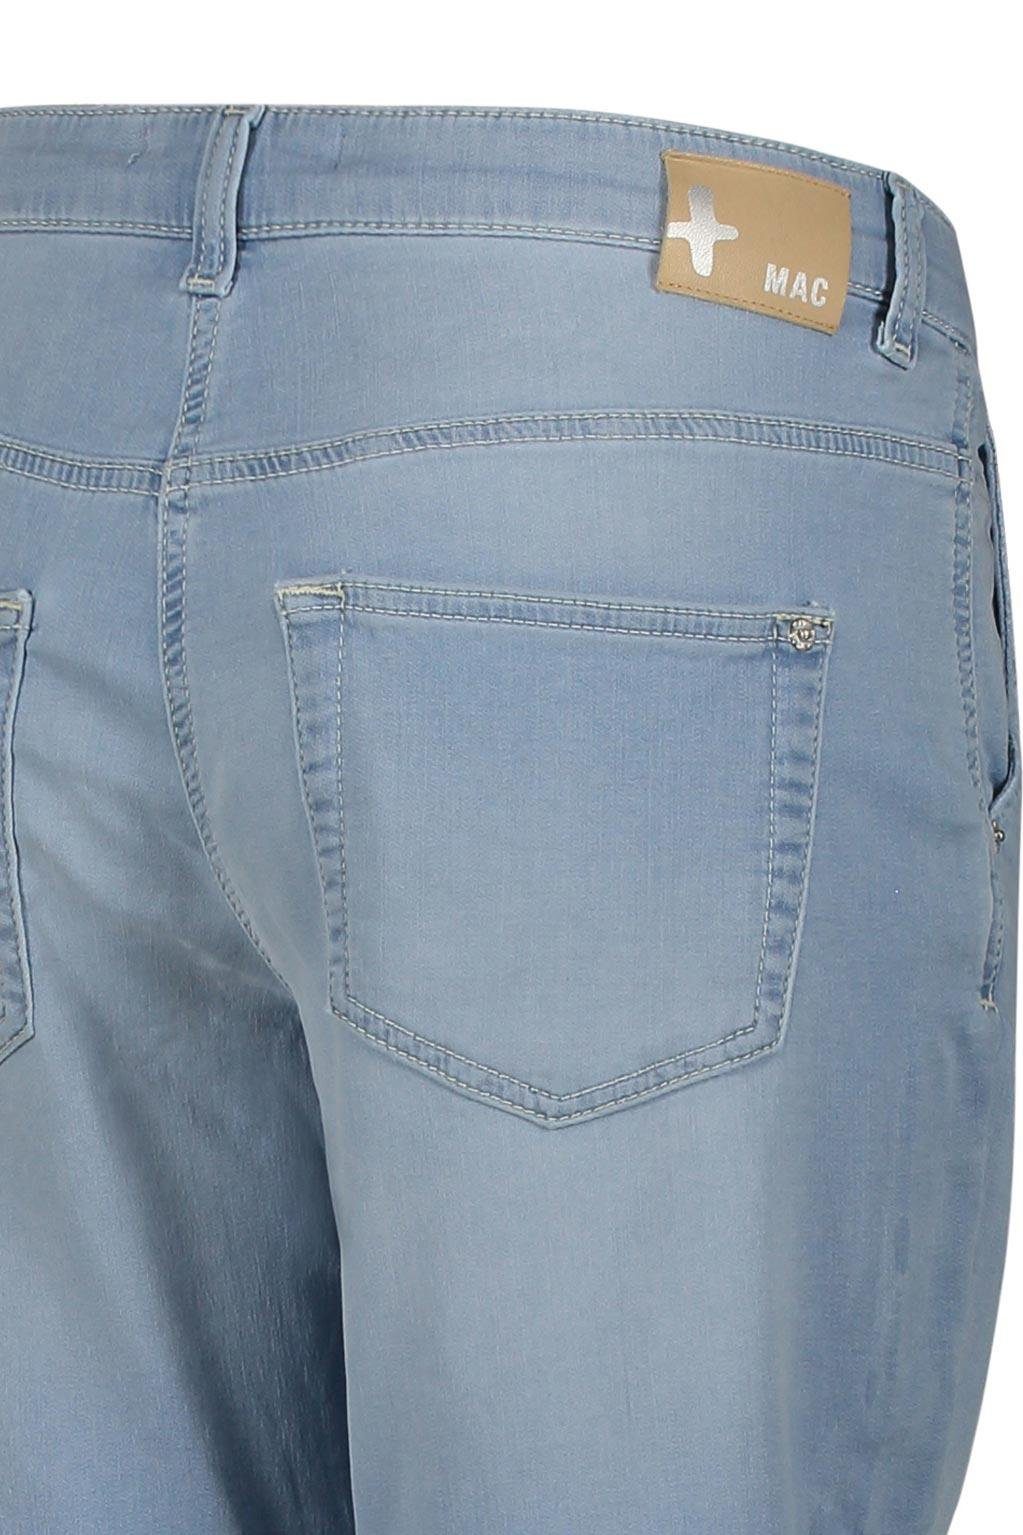 MAC Stretch-Jeans beach SHORTY MAC wash 2775-90-0341 JOG'N summer